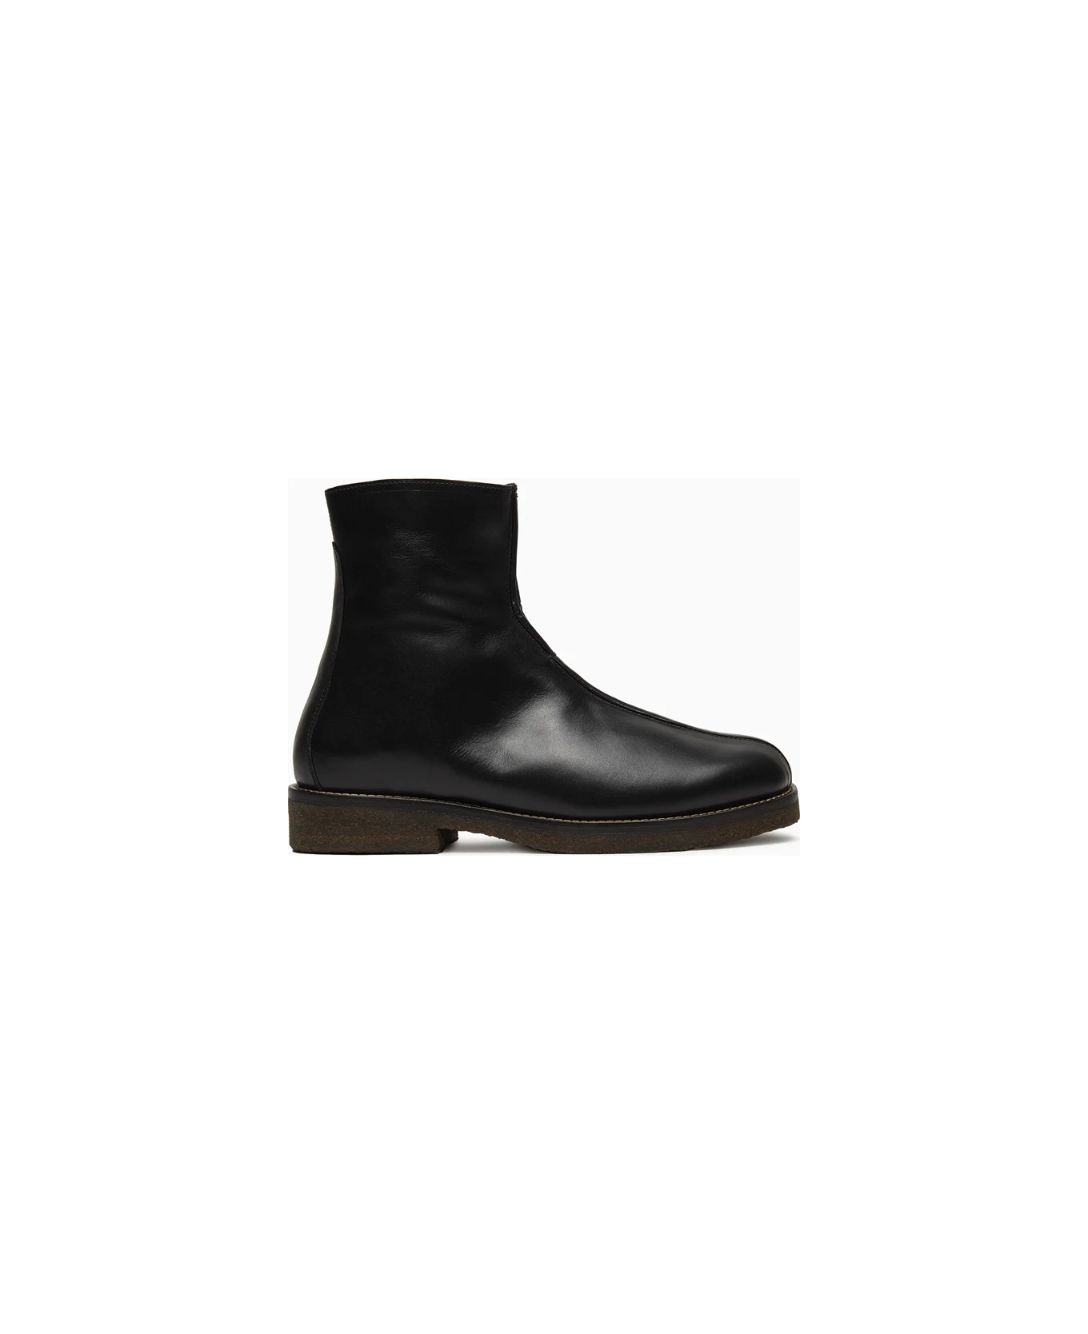 売上げNo.1 【新品】21SS LEMAIRE leather boots www.baumarkt-vogl.at